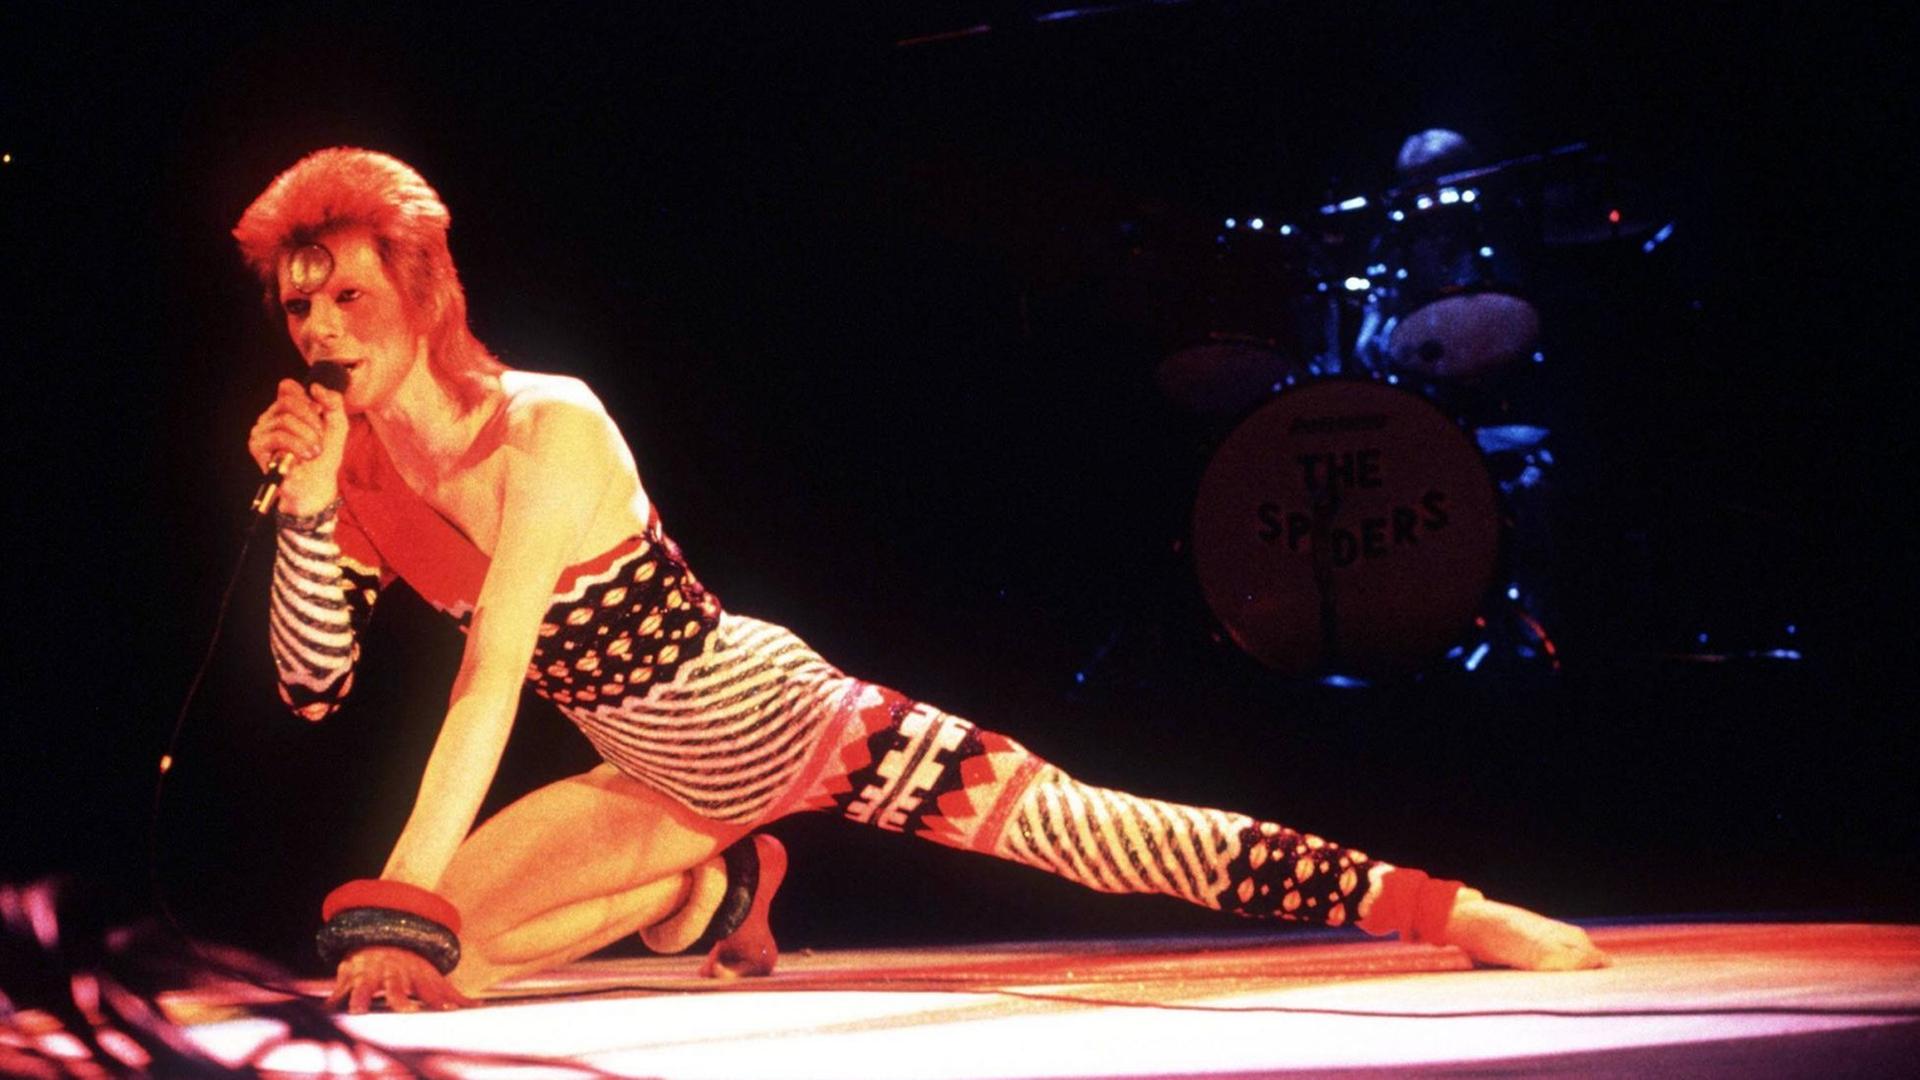 Sänger David Bowie während eines Konzerts in London -